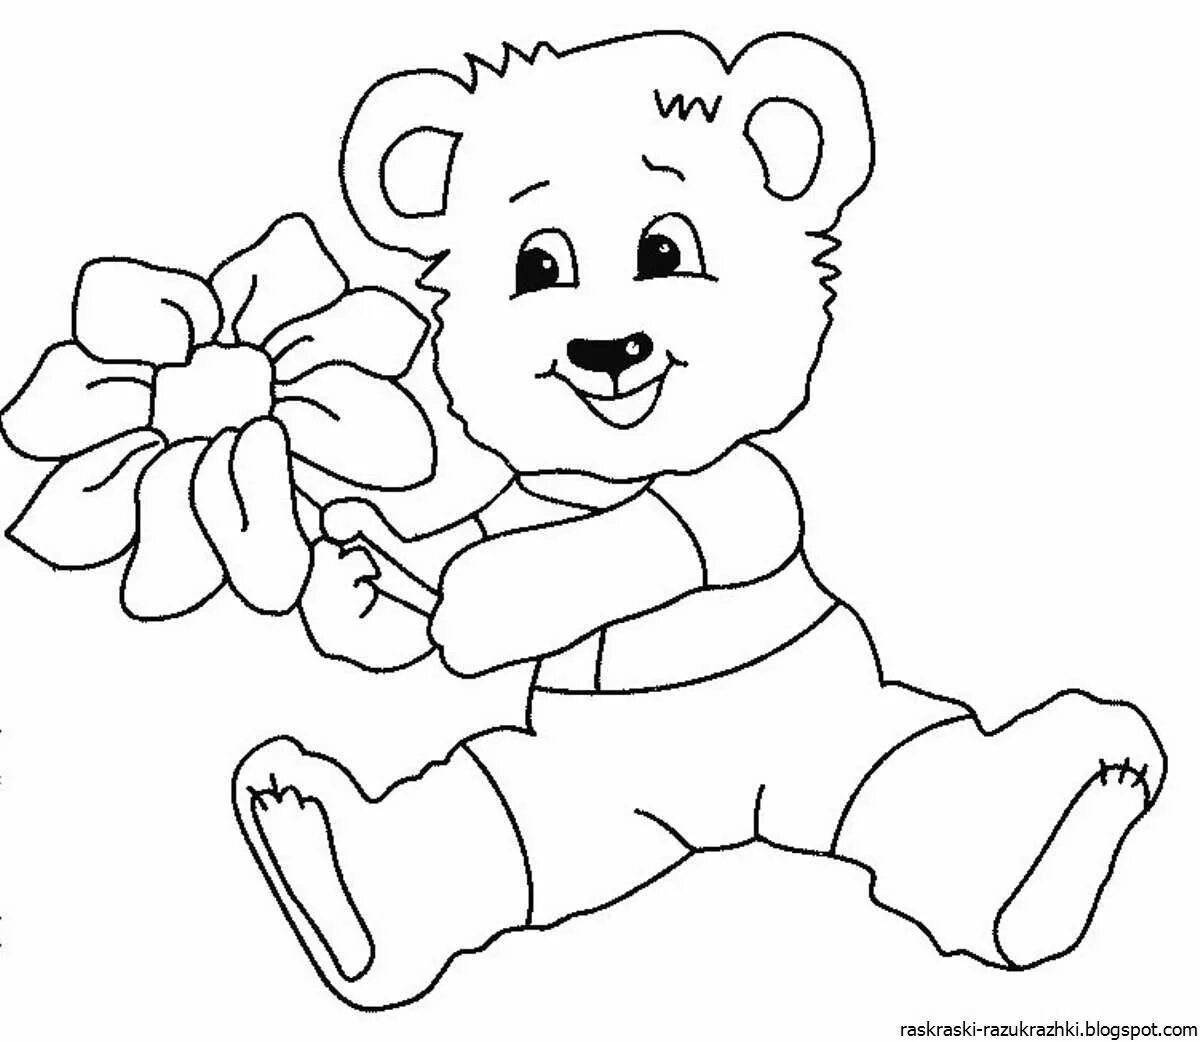 Cute teddy bear in baby pants coloring book